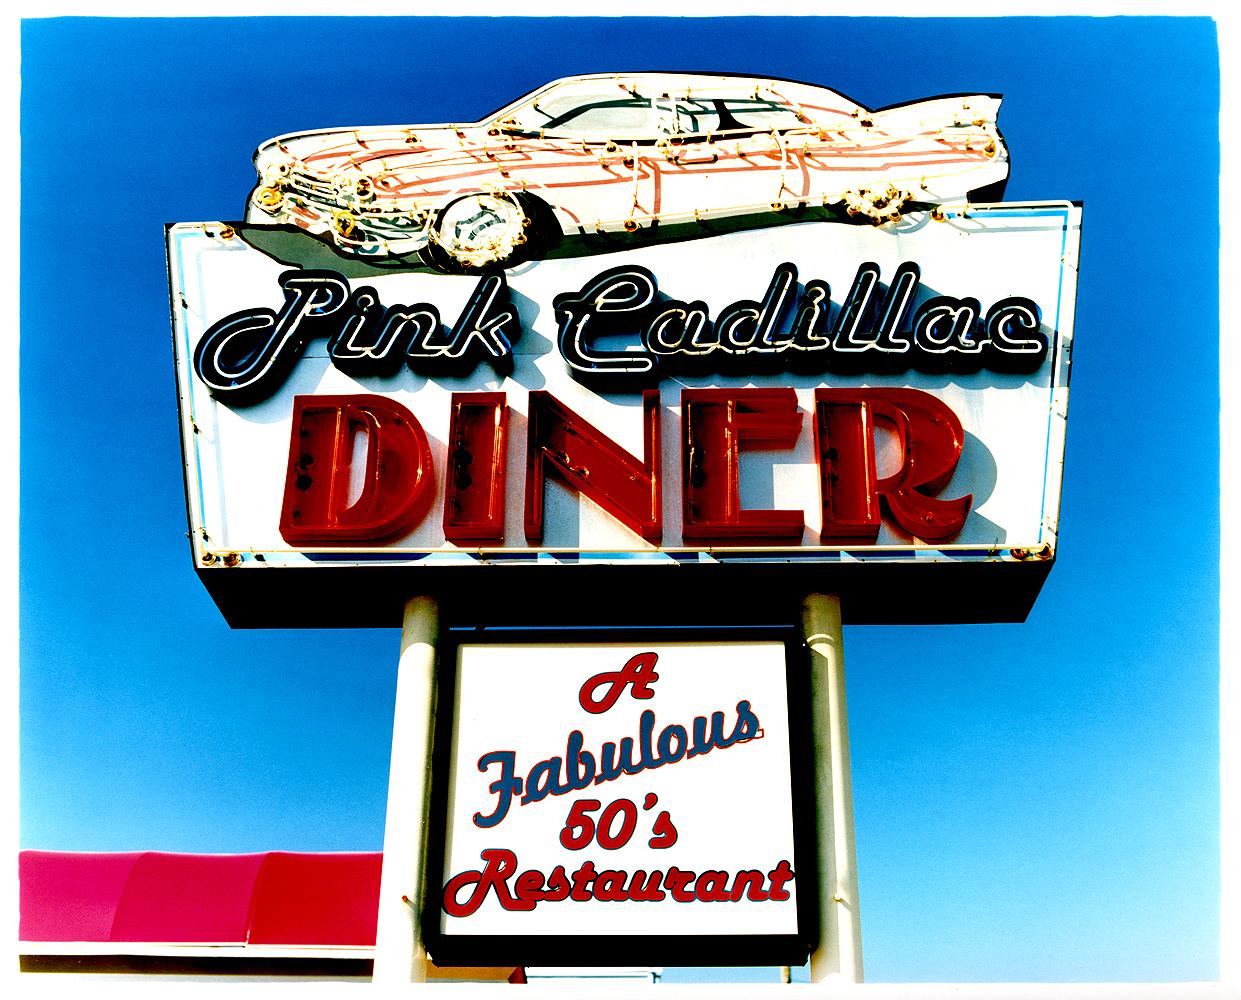 Richard Heeps Color Photograph – Ein fabelhaftes Restaurant aus den 50er Jahren, Wildwood, New Jersey - Zeitgenössische Farbfotografie